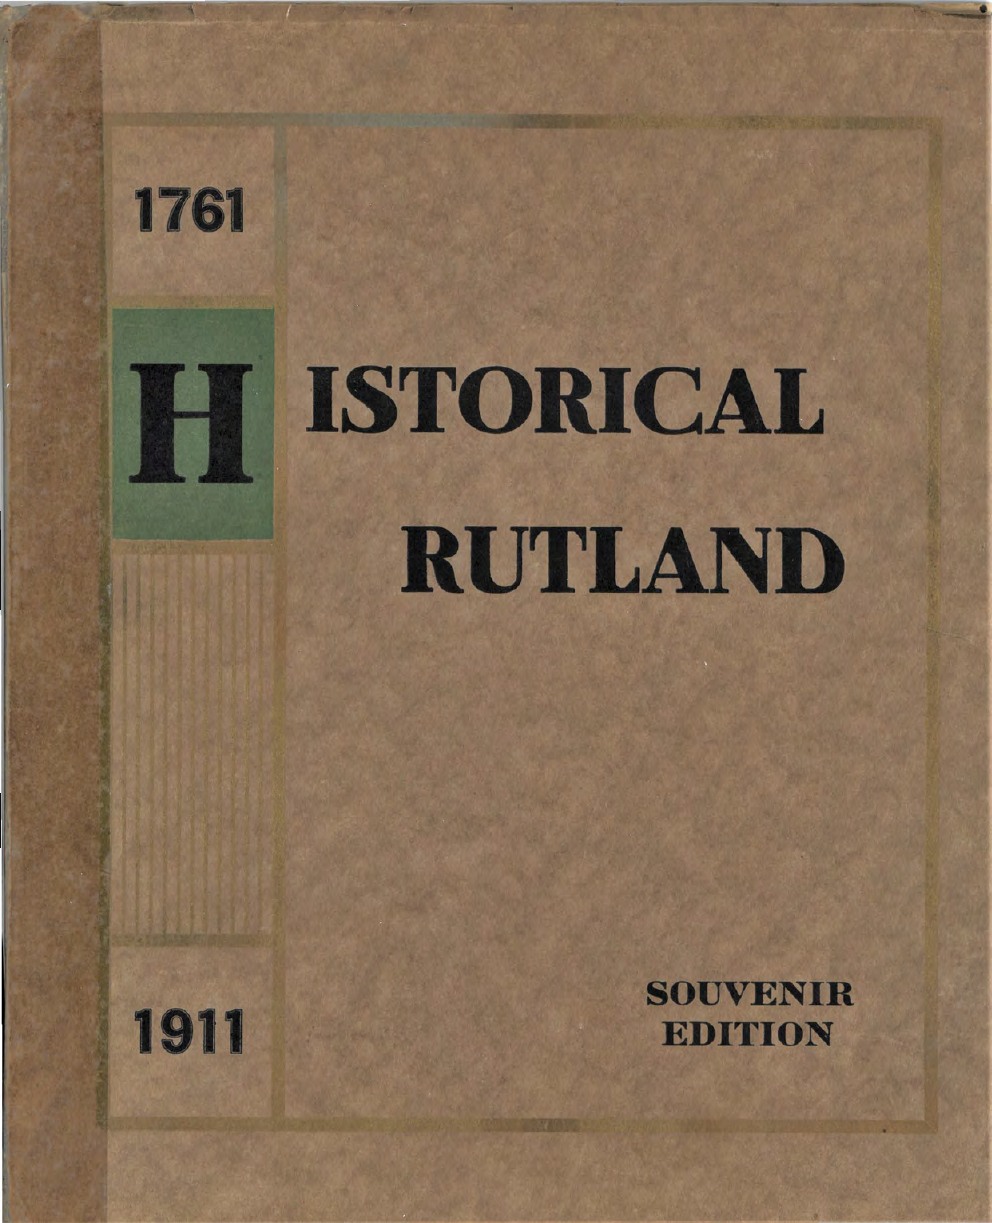 Historial-Rutland-1761-19111